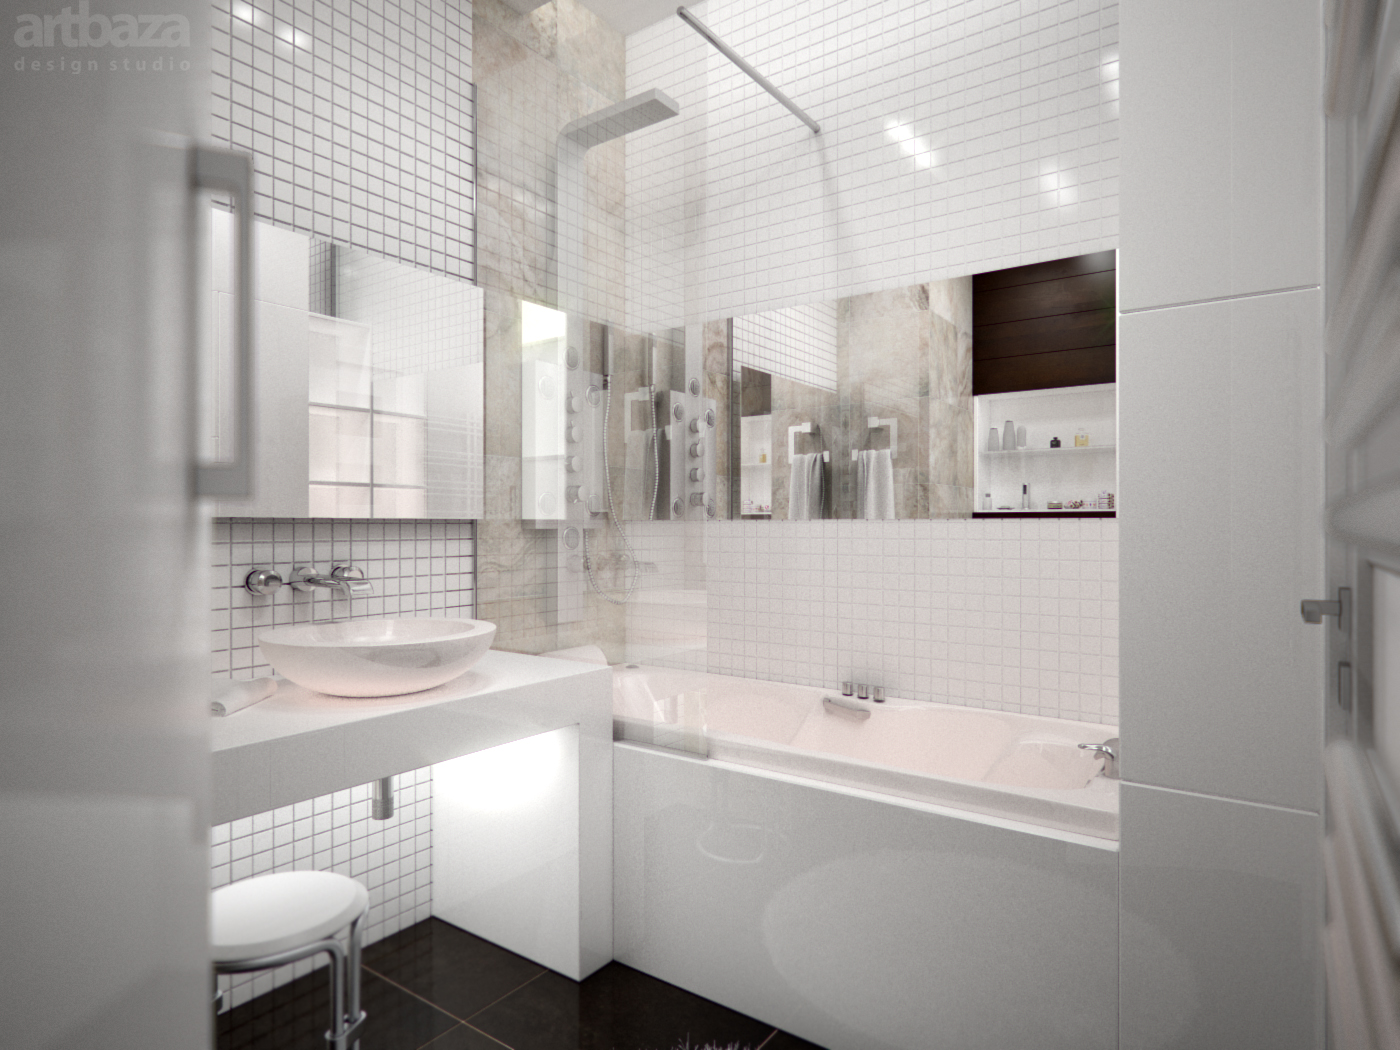 helder ontwerp van een badkamer met een douche in donkere kleuren